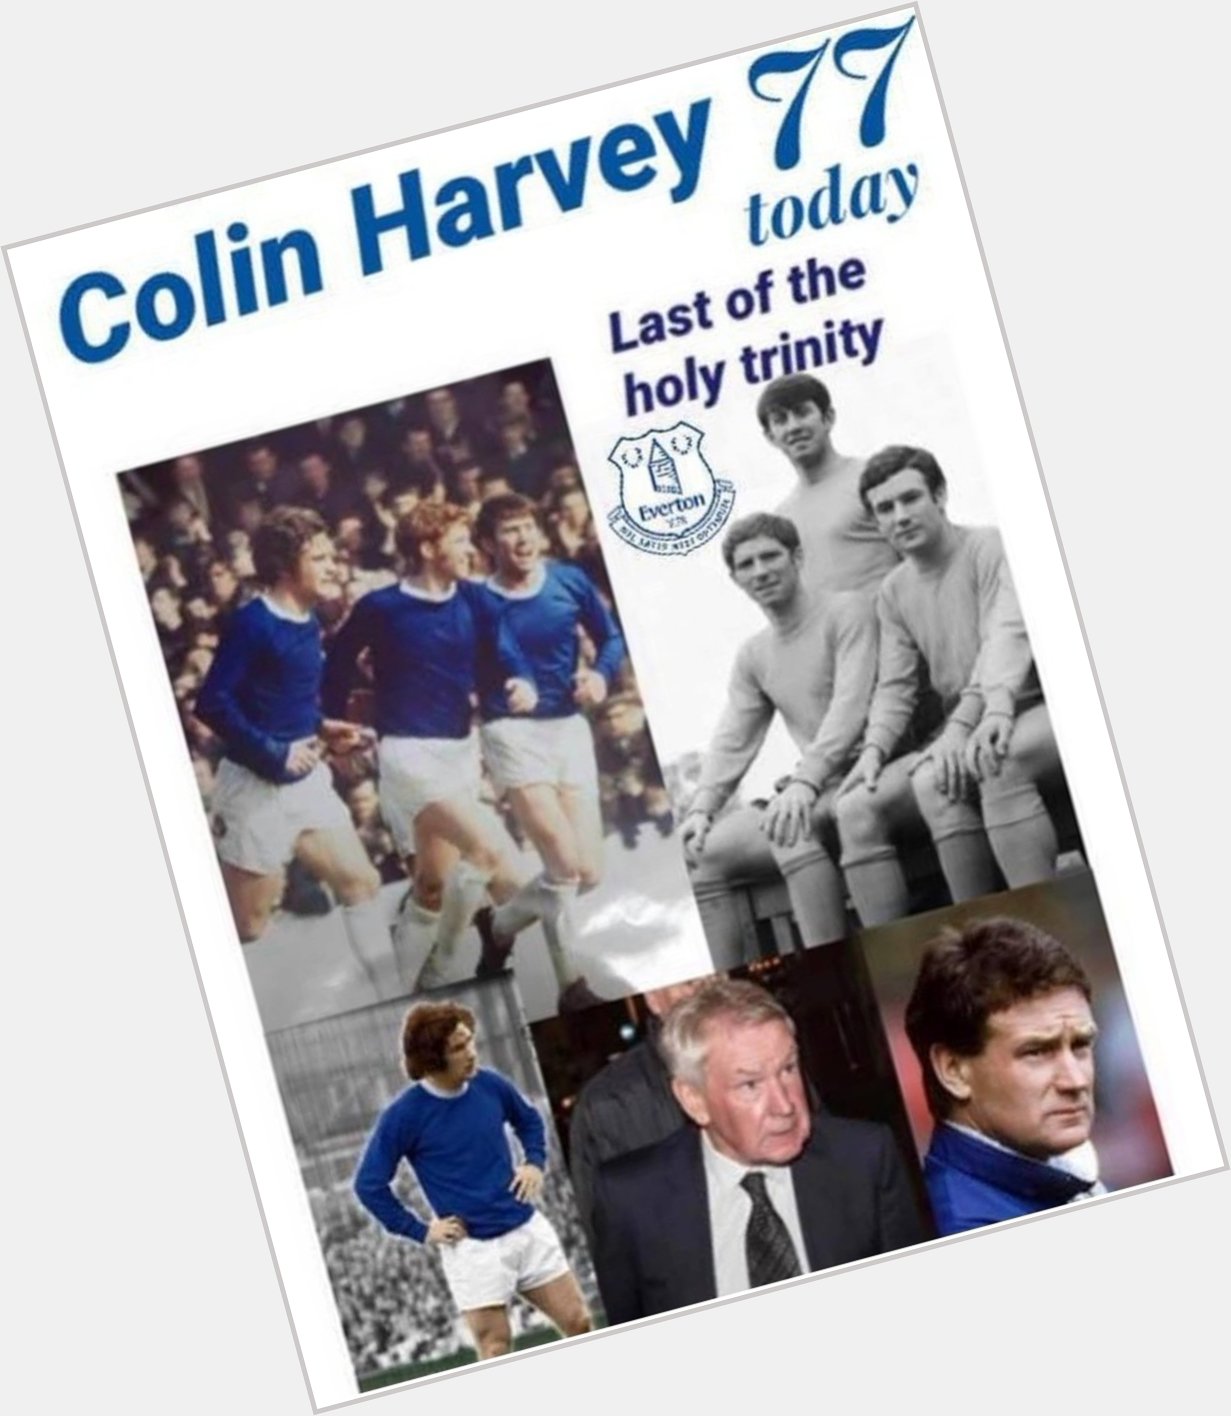 Happy birthday Colin Harvey 